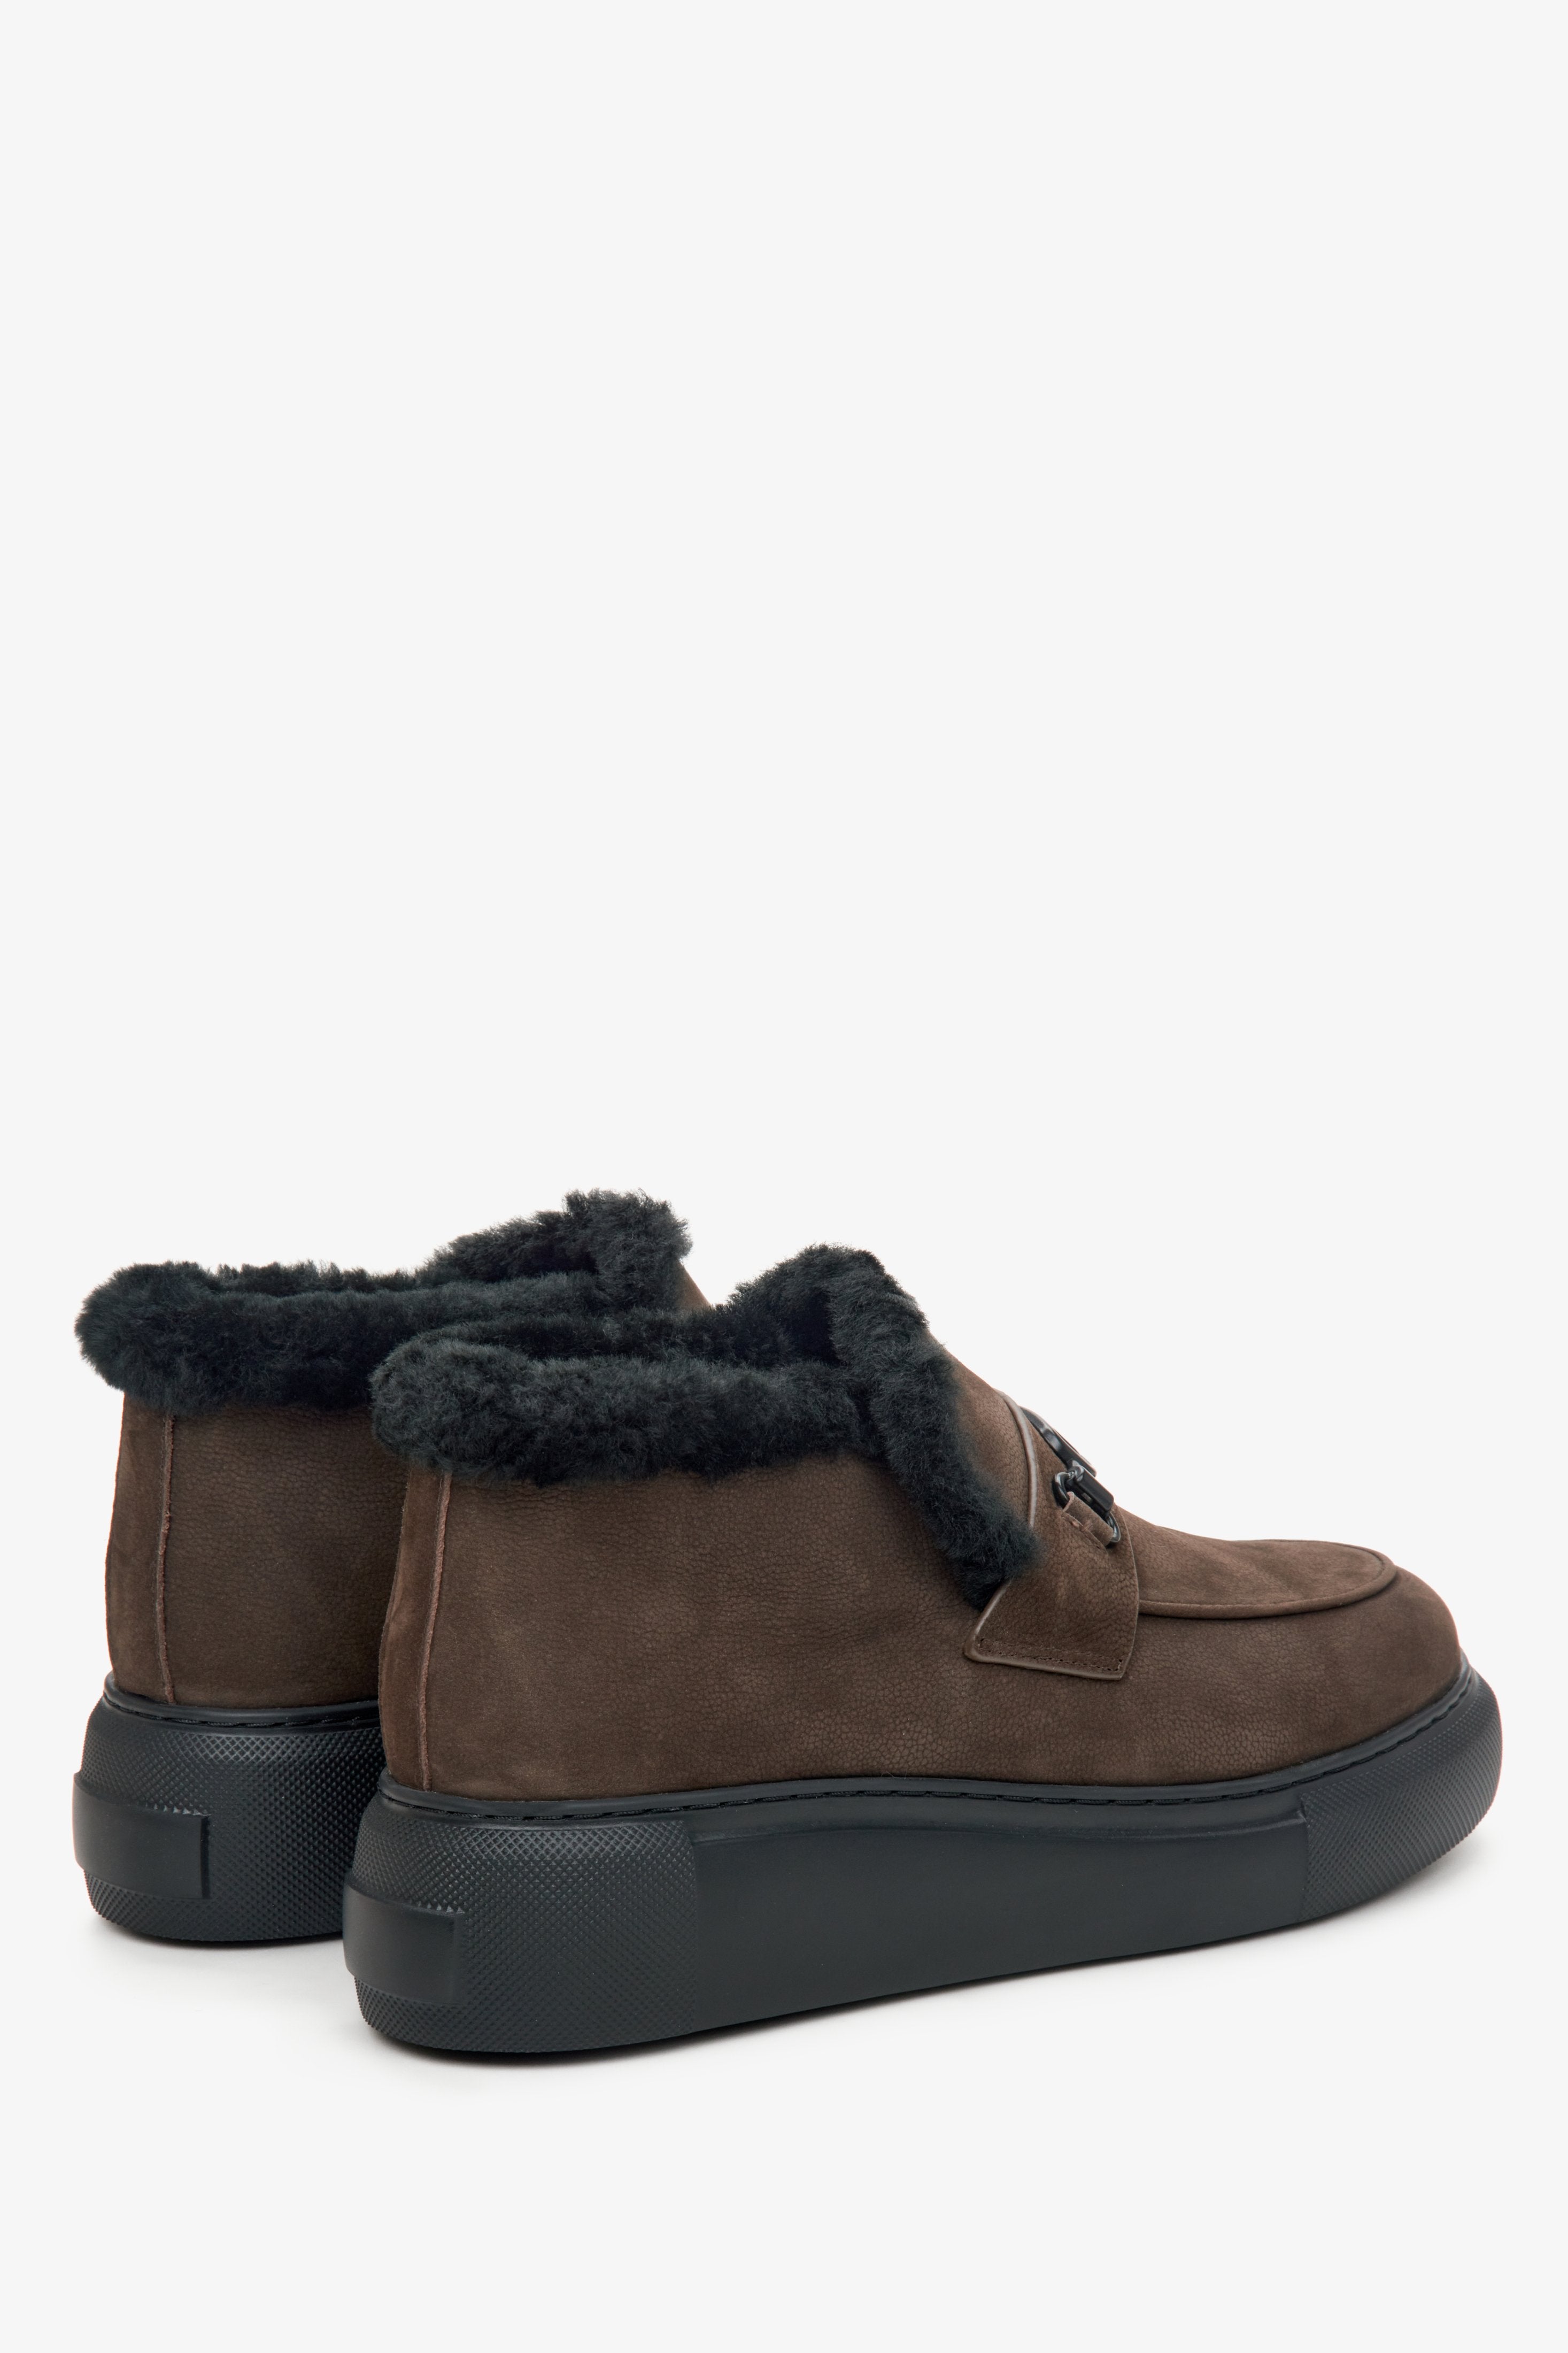 Zimowe botki damskie w kolorze brązowym z futrzanym wypełnieniem - zbliżenie na tył butów marki Estro.